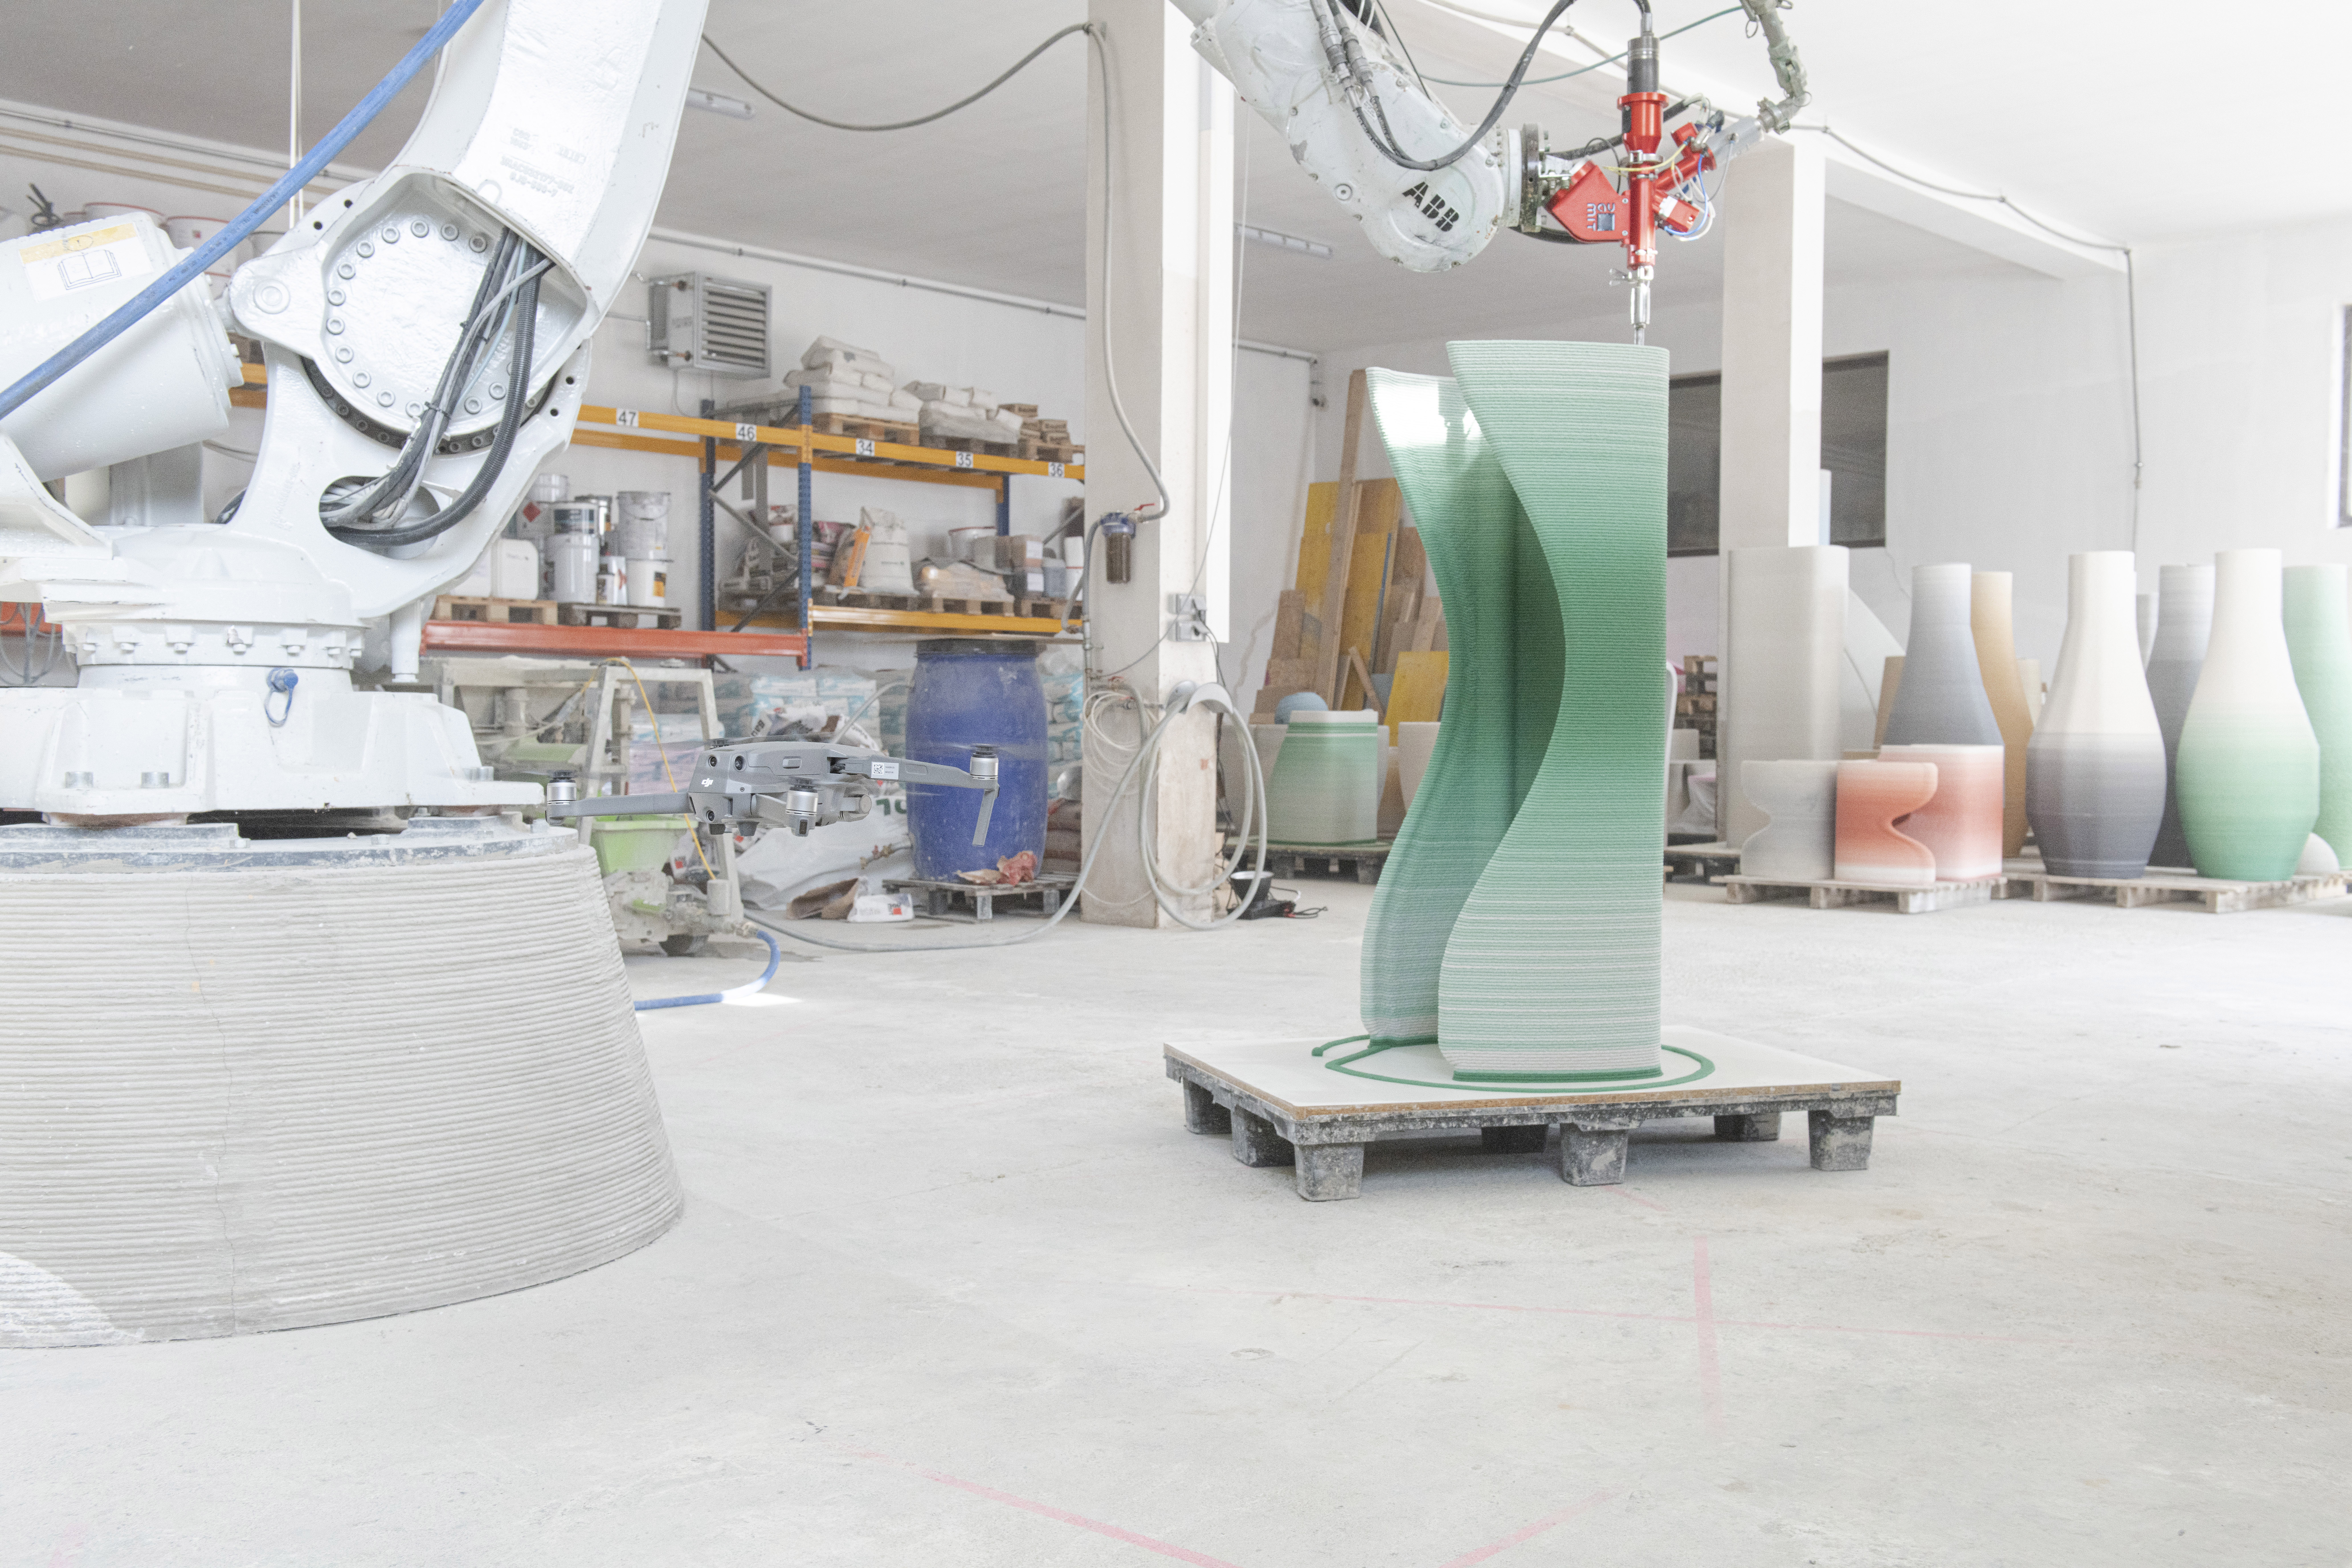 3D printed concrete gradient furniture and ceramic vases